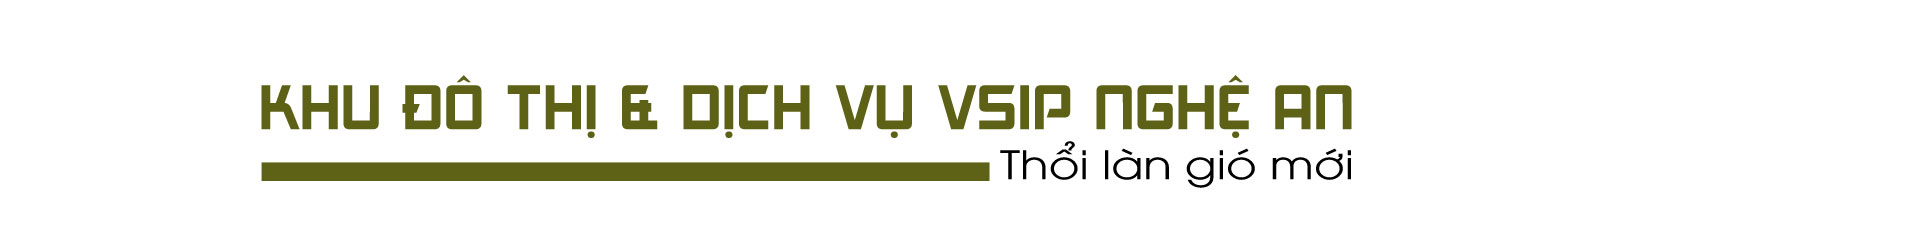 VSIP Nghệ An – Tiên phong xây dựng môi trường sống và làm việc chuẩn quốc tế